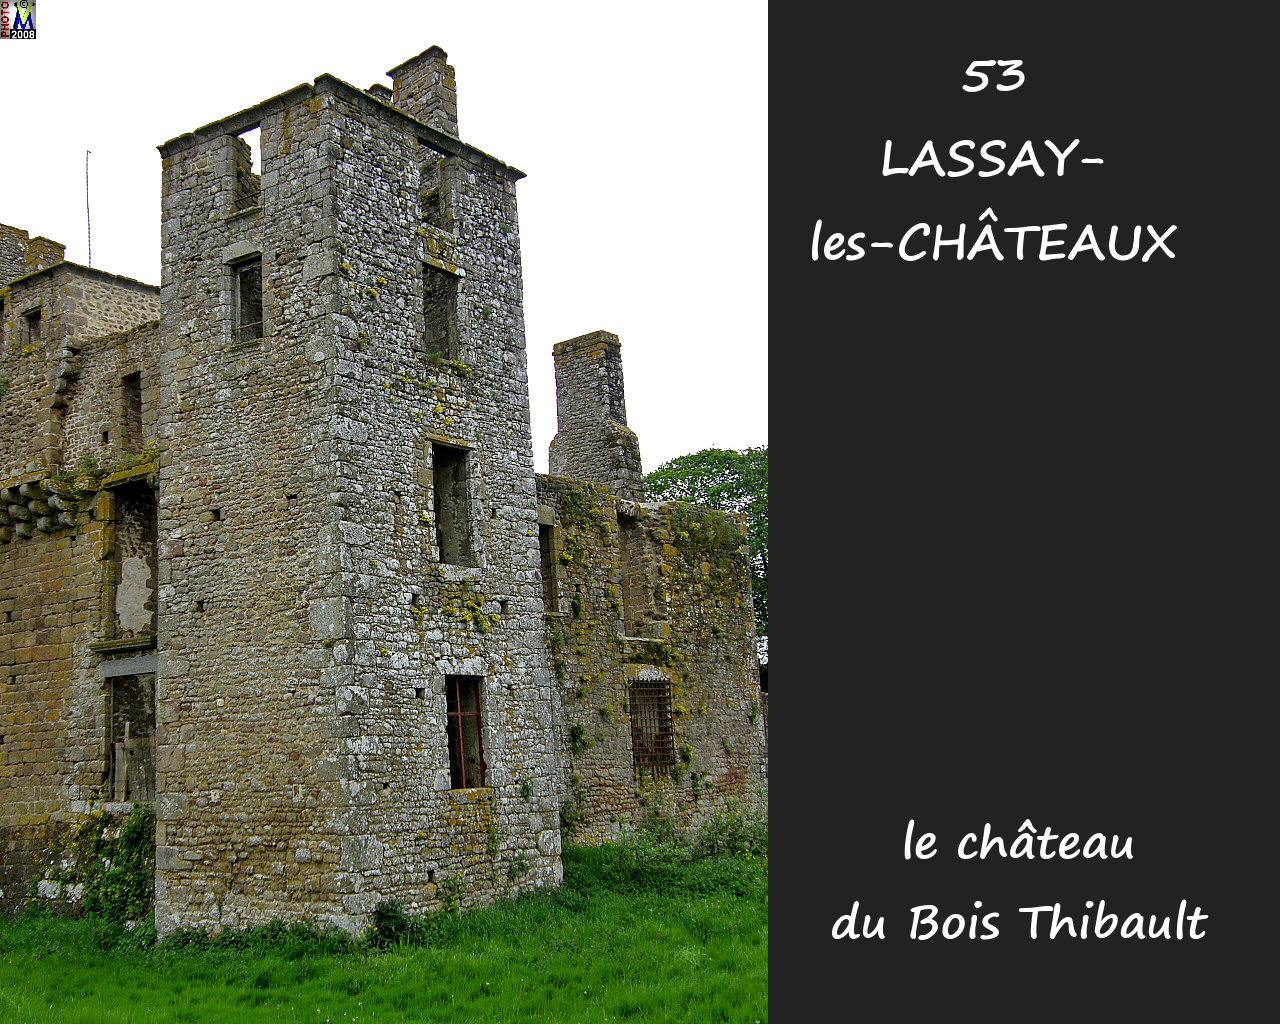 53LASSAY-CHATEAUX_chateauBT_114.jpg